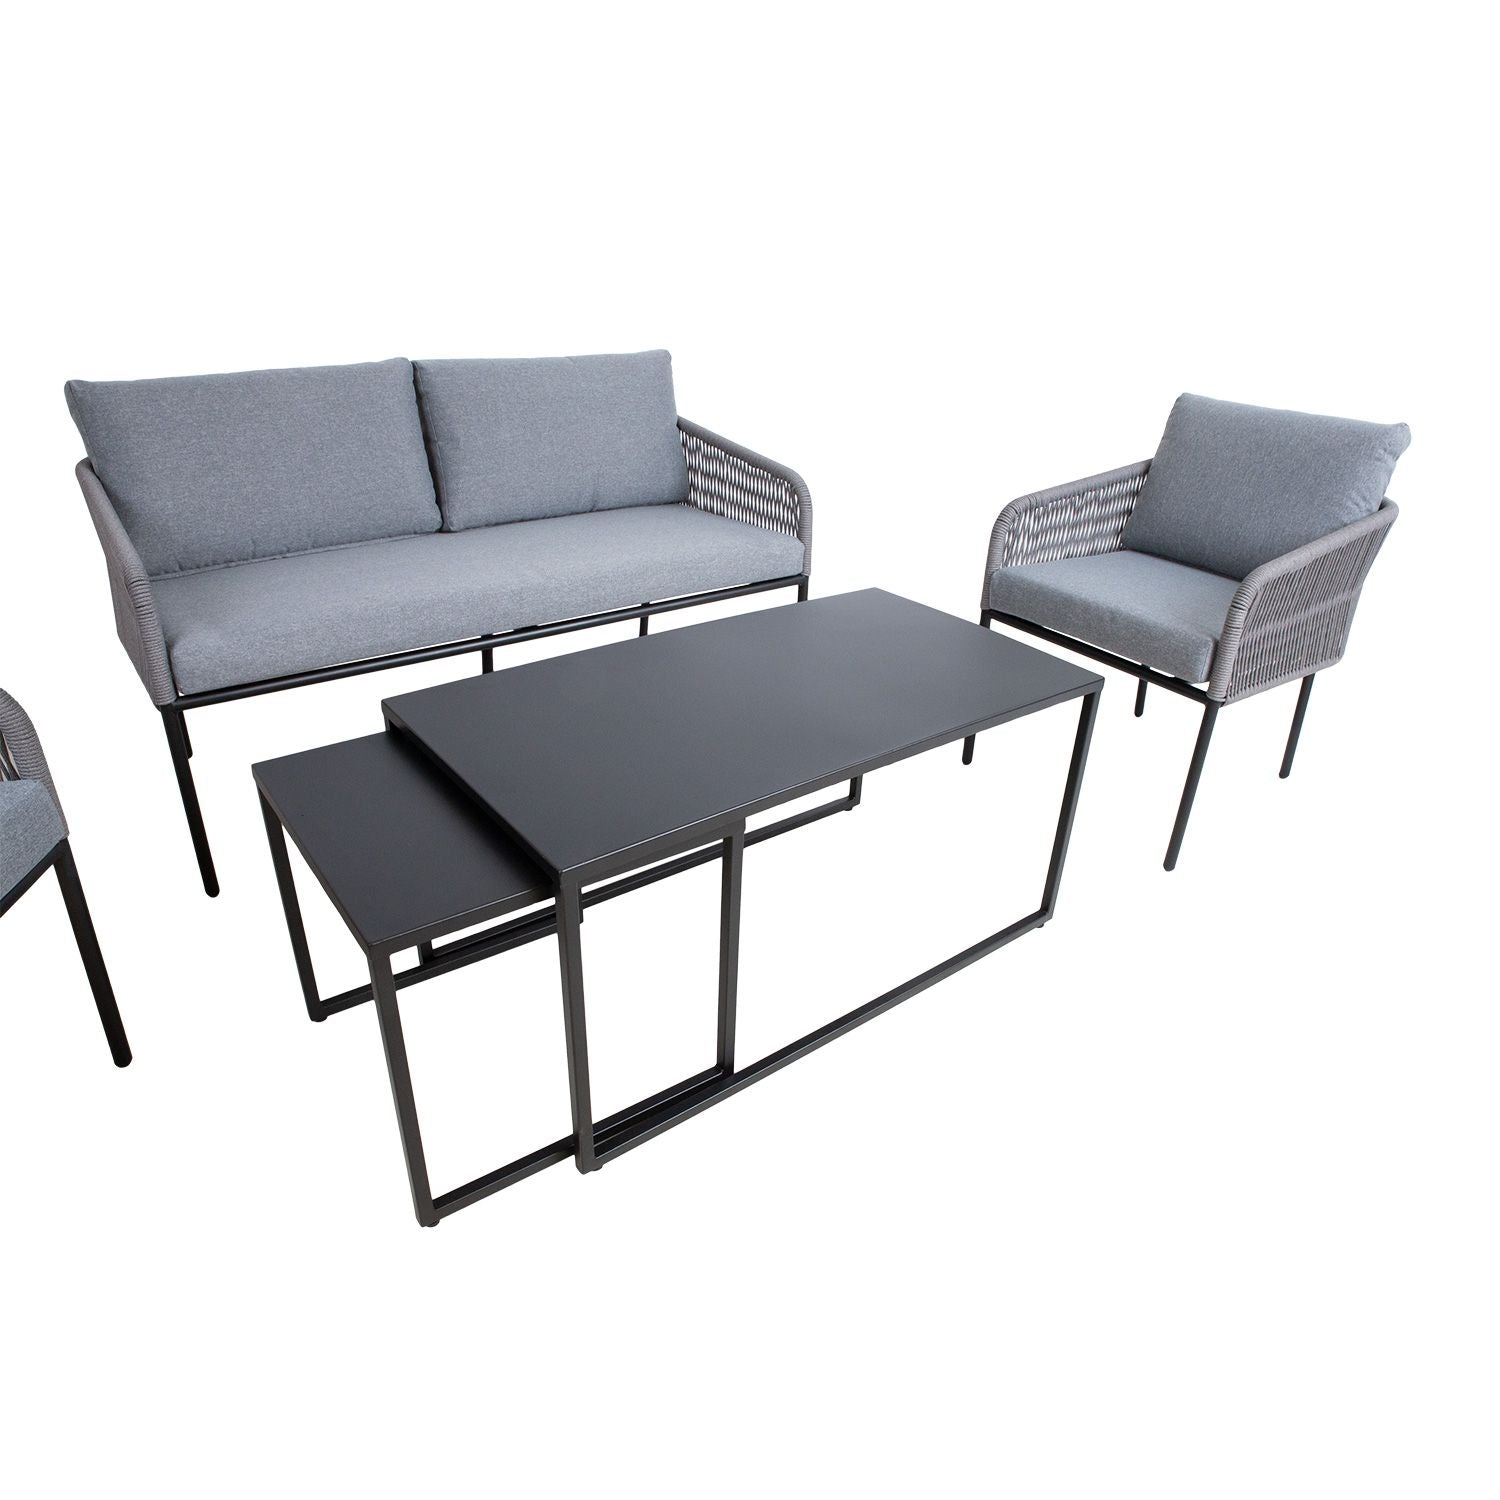 Sodo baldų komplektas LEVINE 2 stalai, sofa ir 2 foteliai, pilkos spalvos.